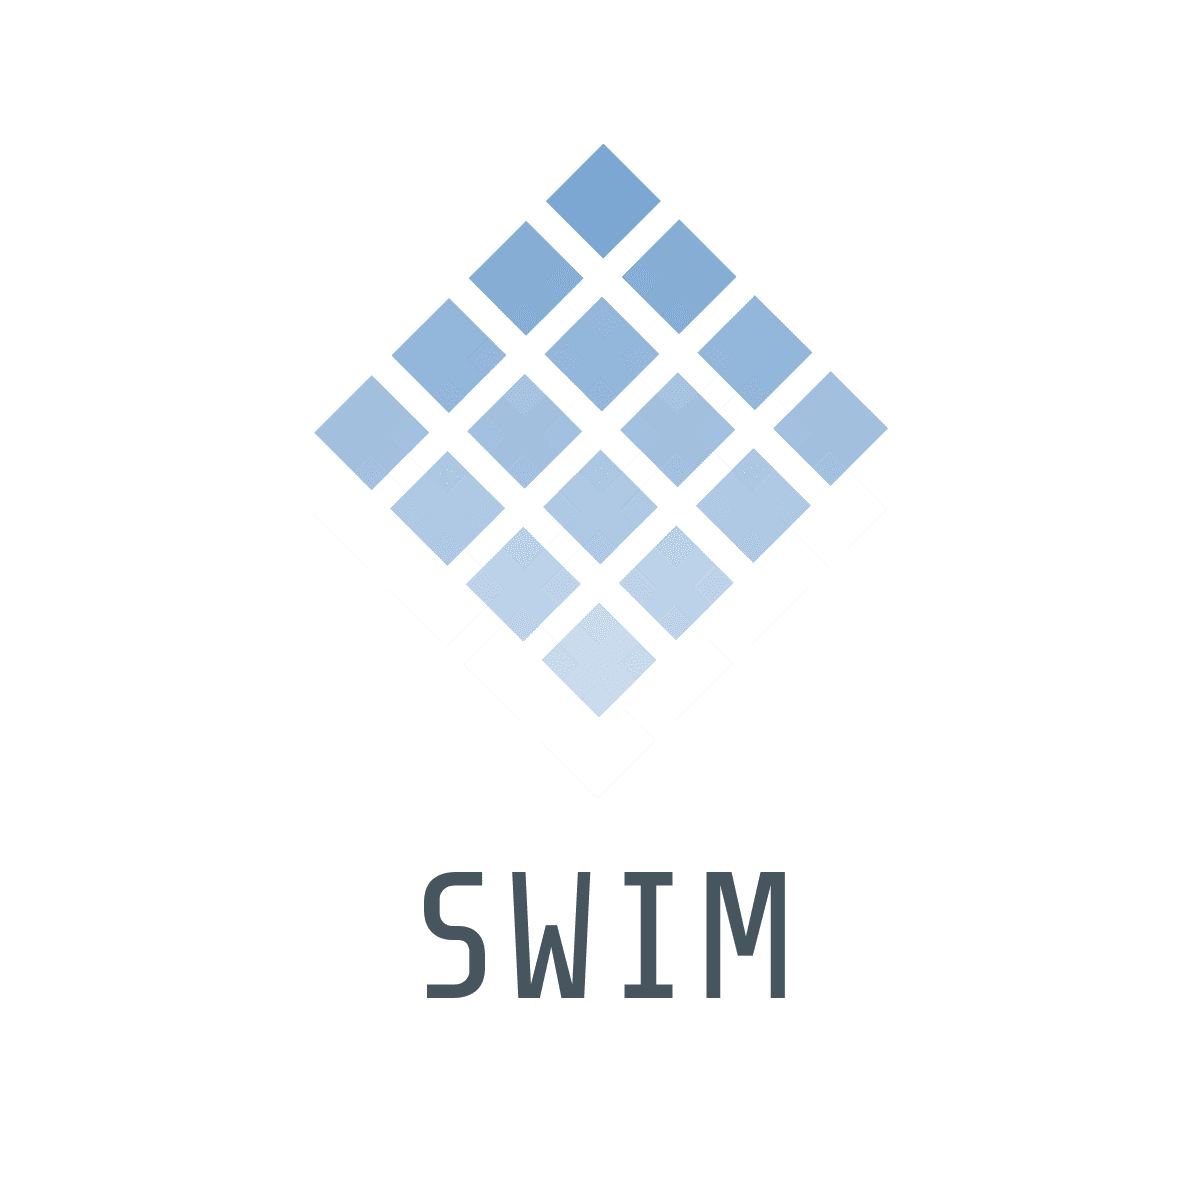 SWIM logo